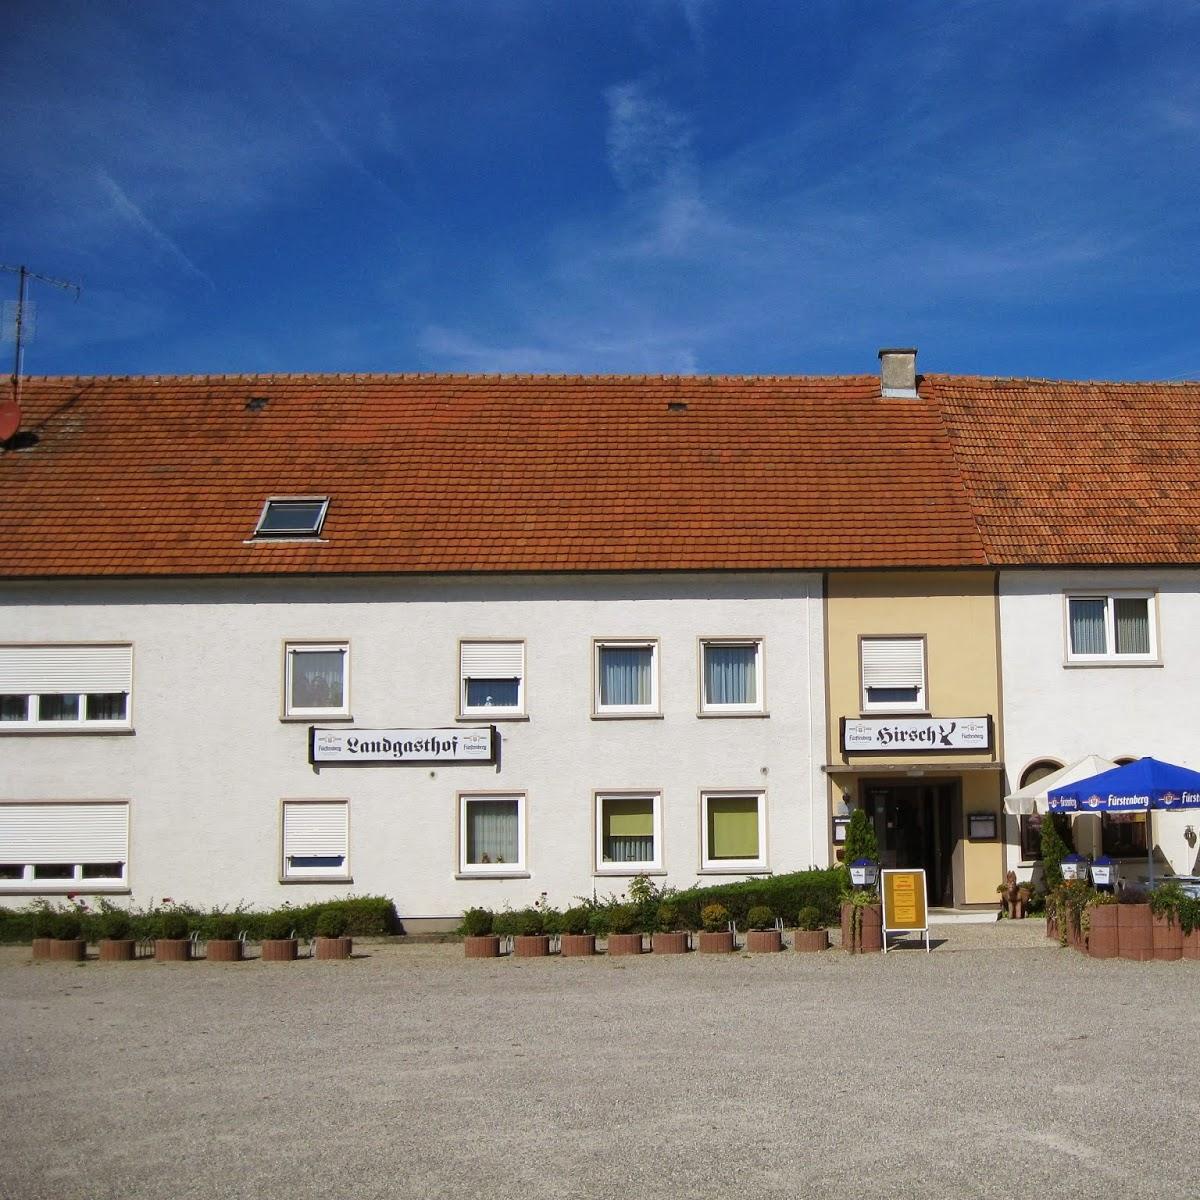 Restaurant "Landgasthof Hirsch" in  Aitrach